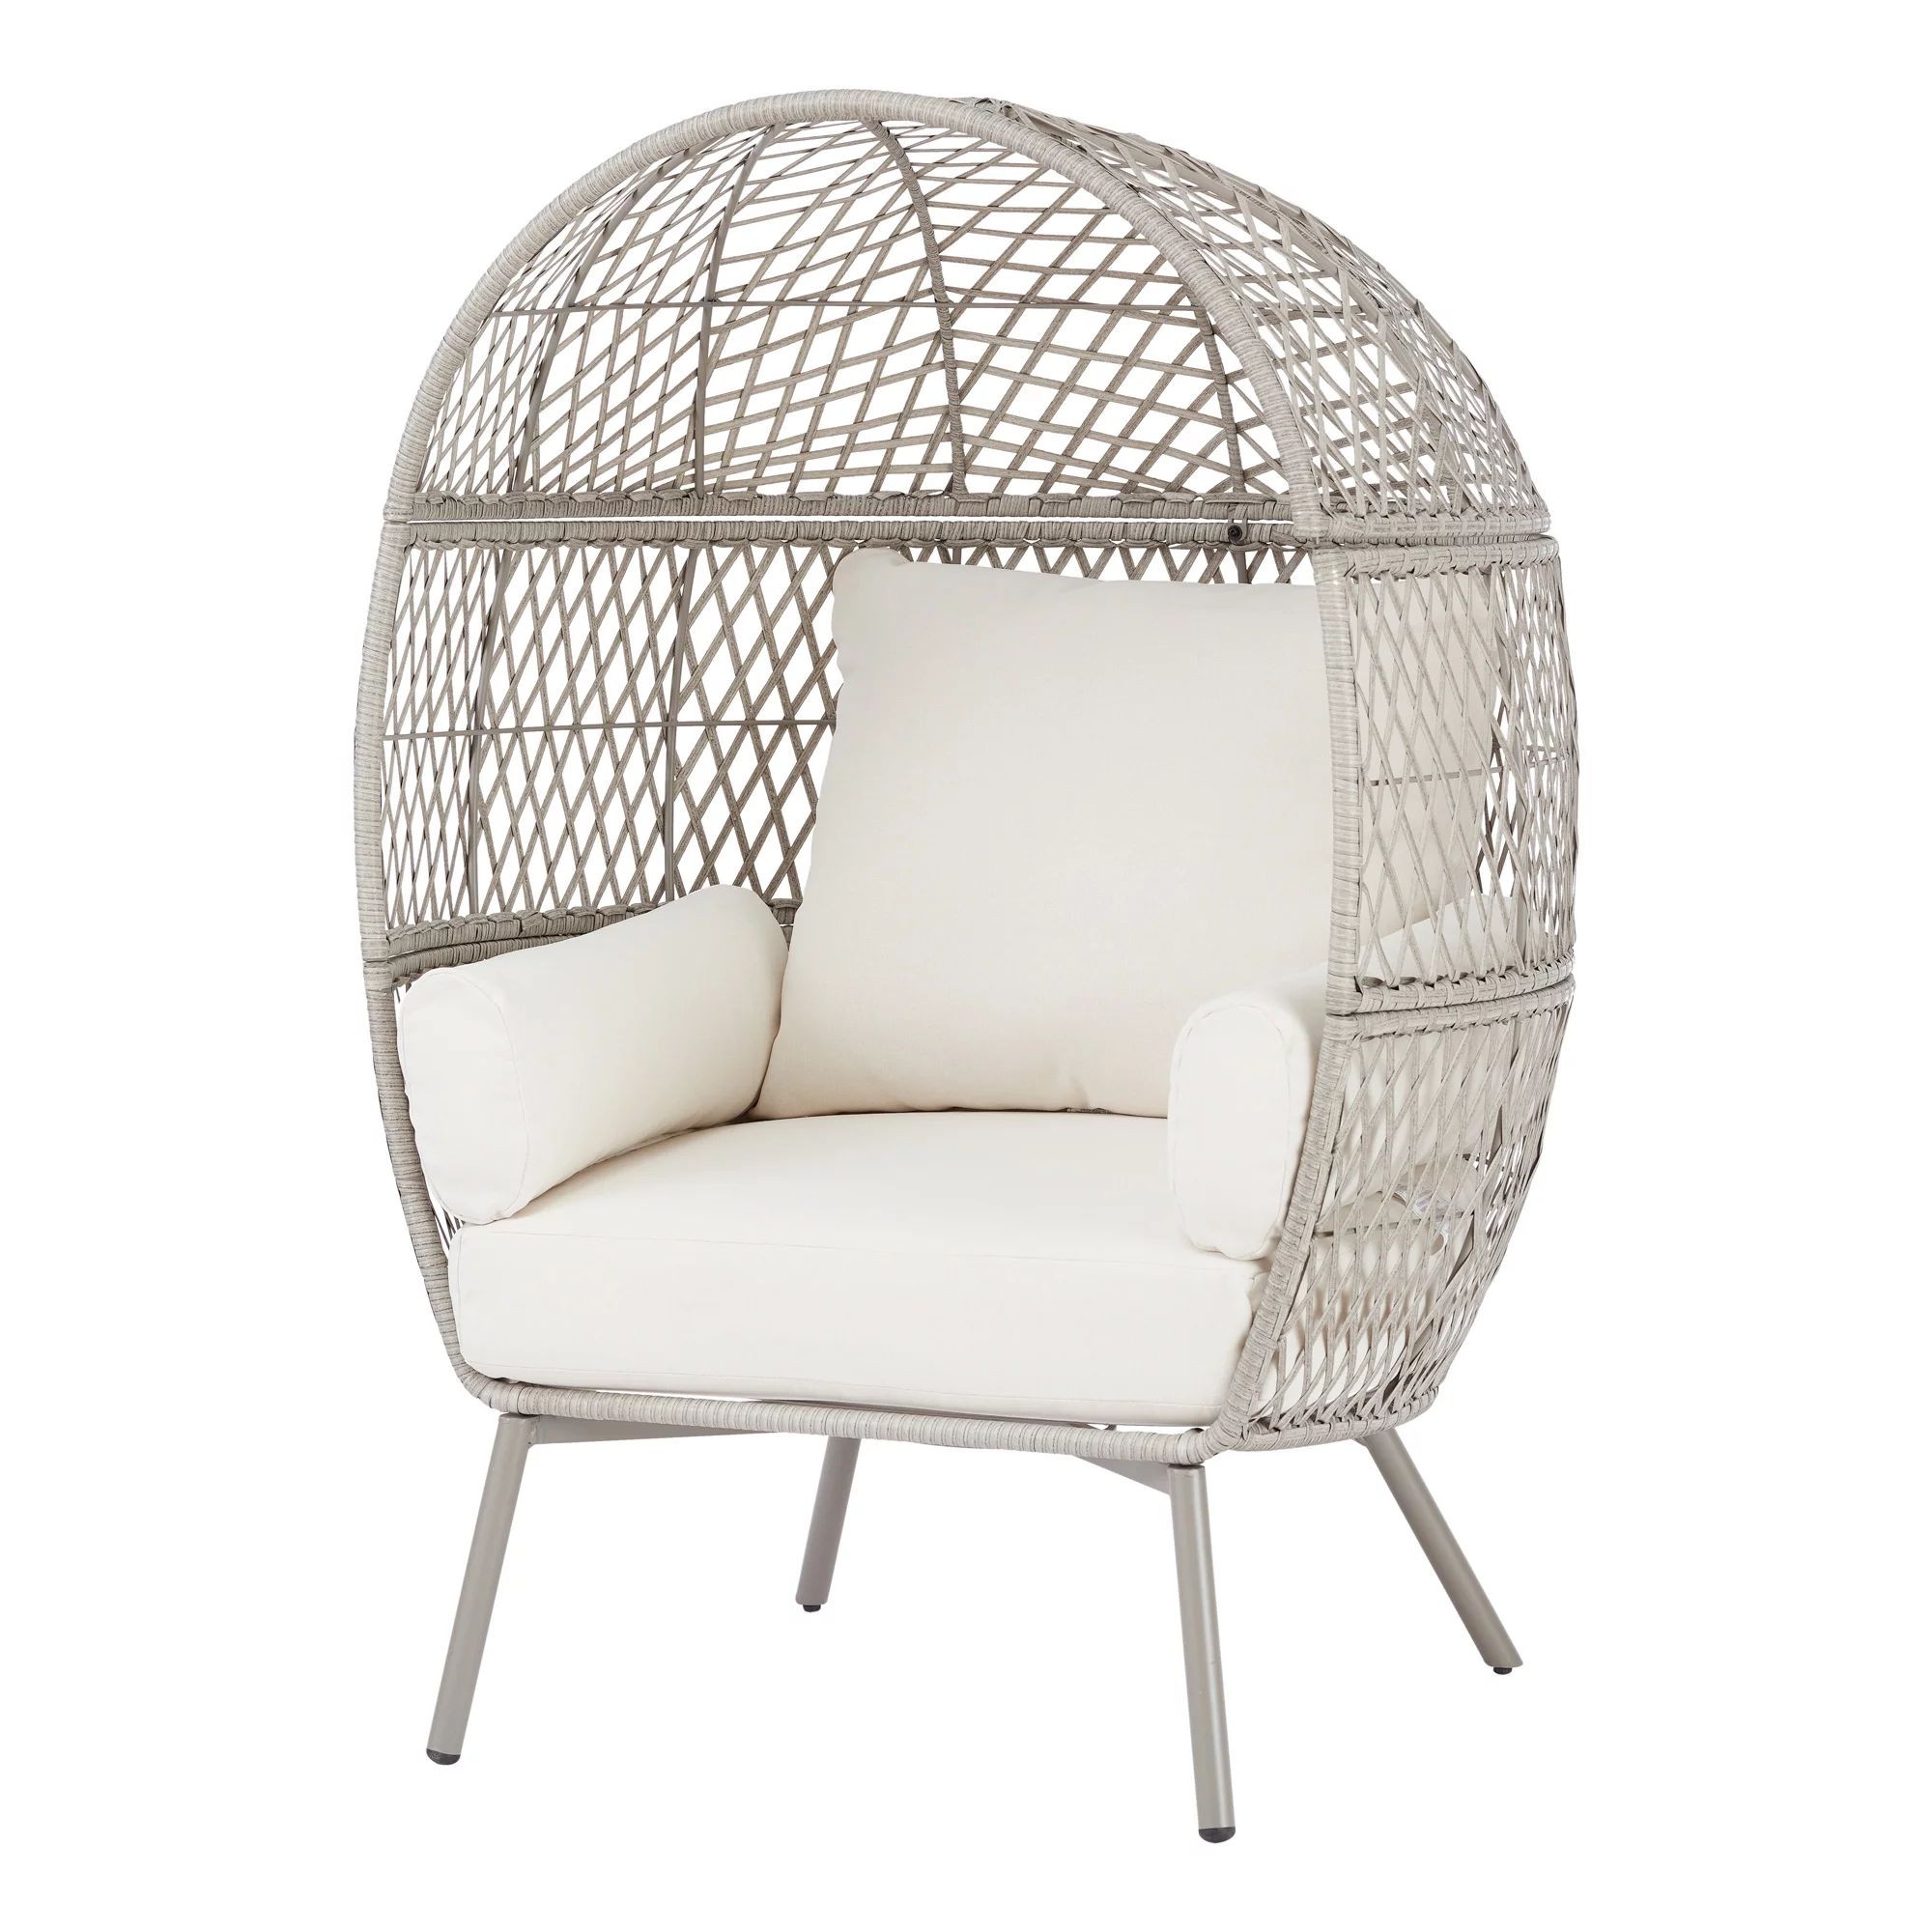 Better Homes & Gardens Ventura Weather Resistant Wicker Outdoor Lounge Chair - Cream | Walmart (US)